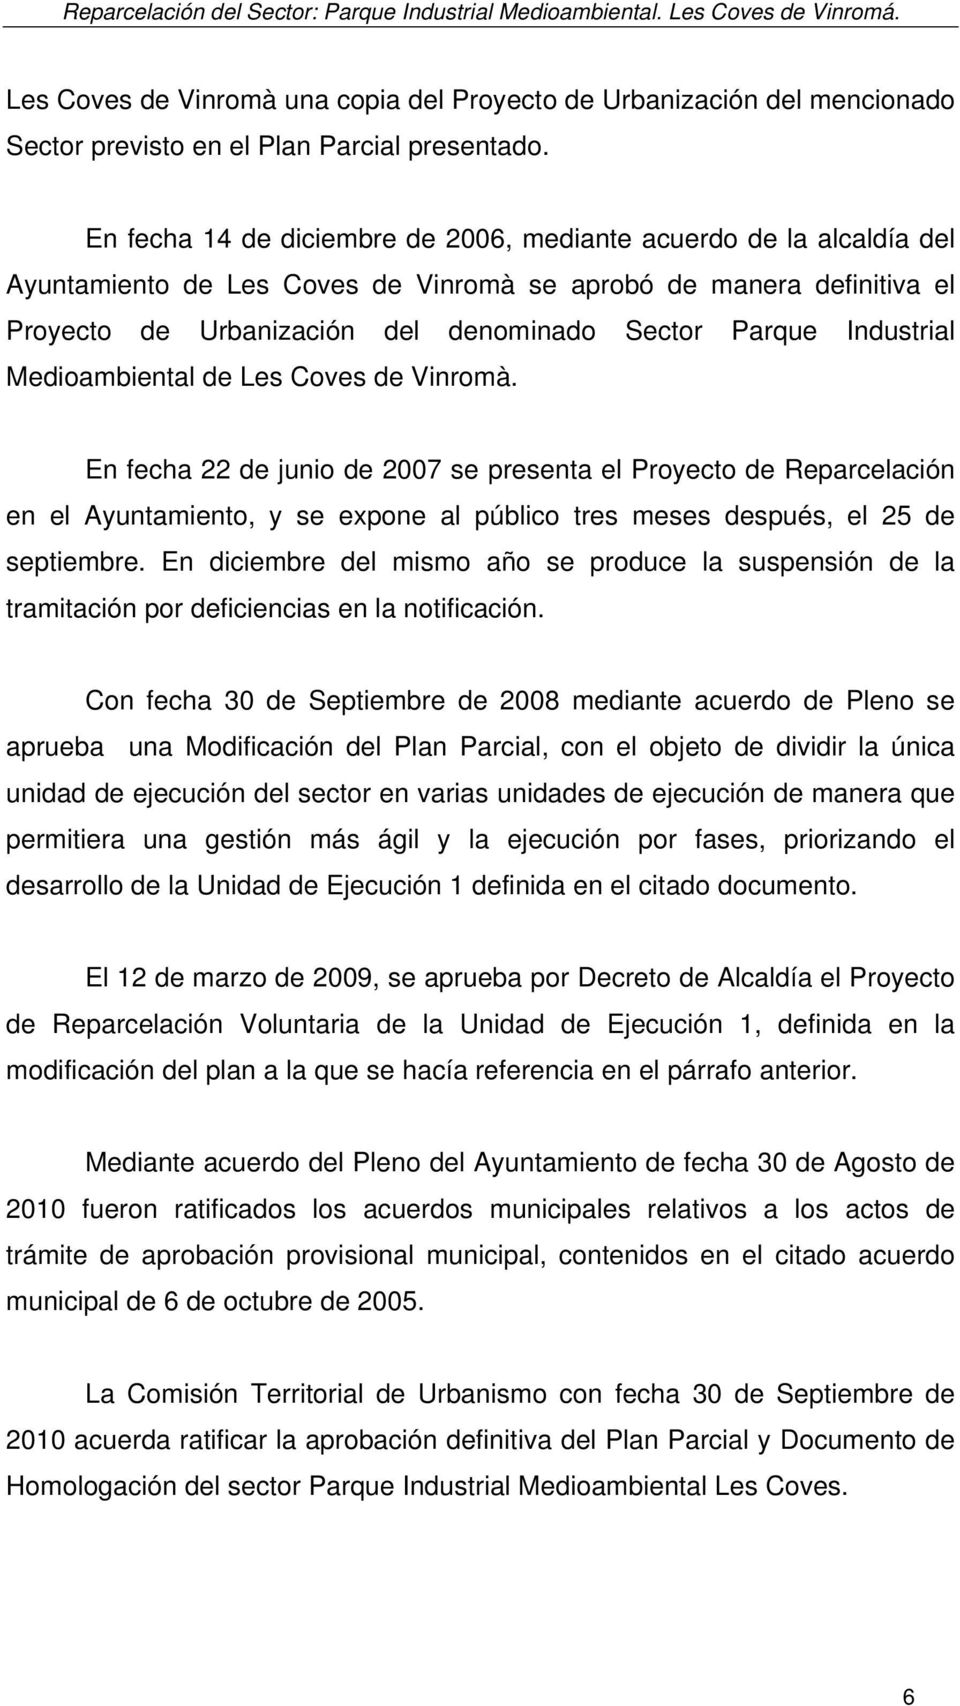 En fecha 14 de diciembre de 2006, mediante acuerdo de la alcaldía del Ayuntamiento de Les Coves de Vinromà se aprobó de manera definitiva el Proyecto de Urbanización del denominado Sector Parque